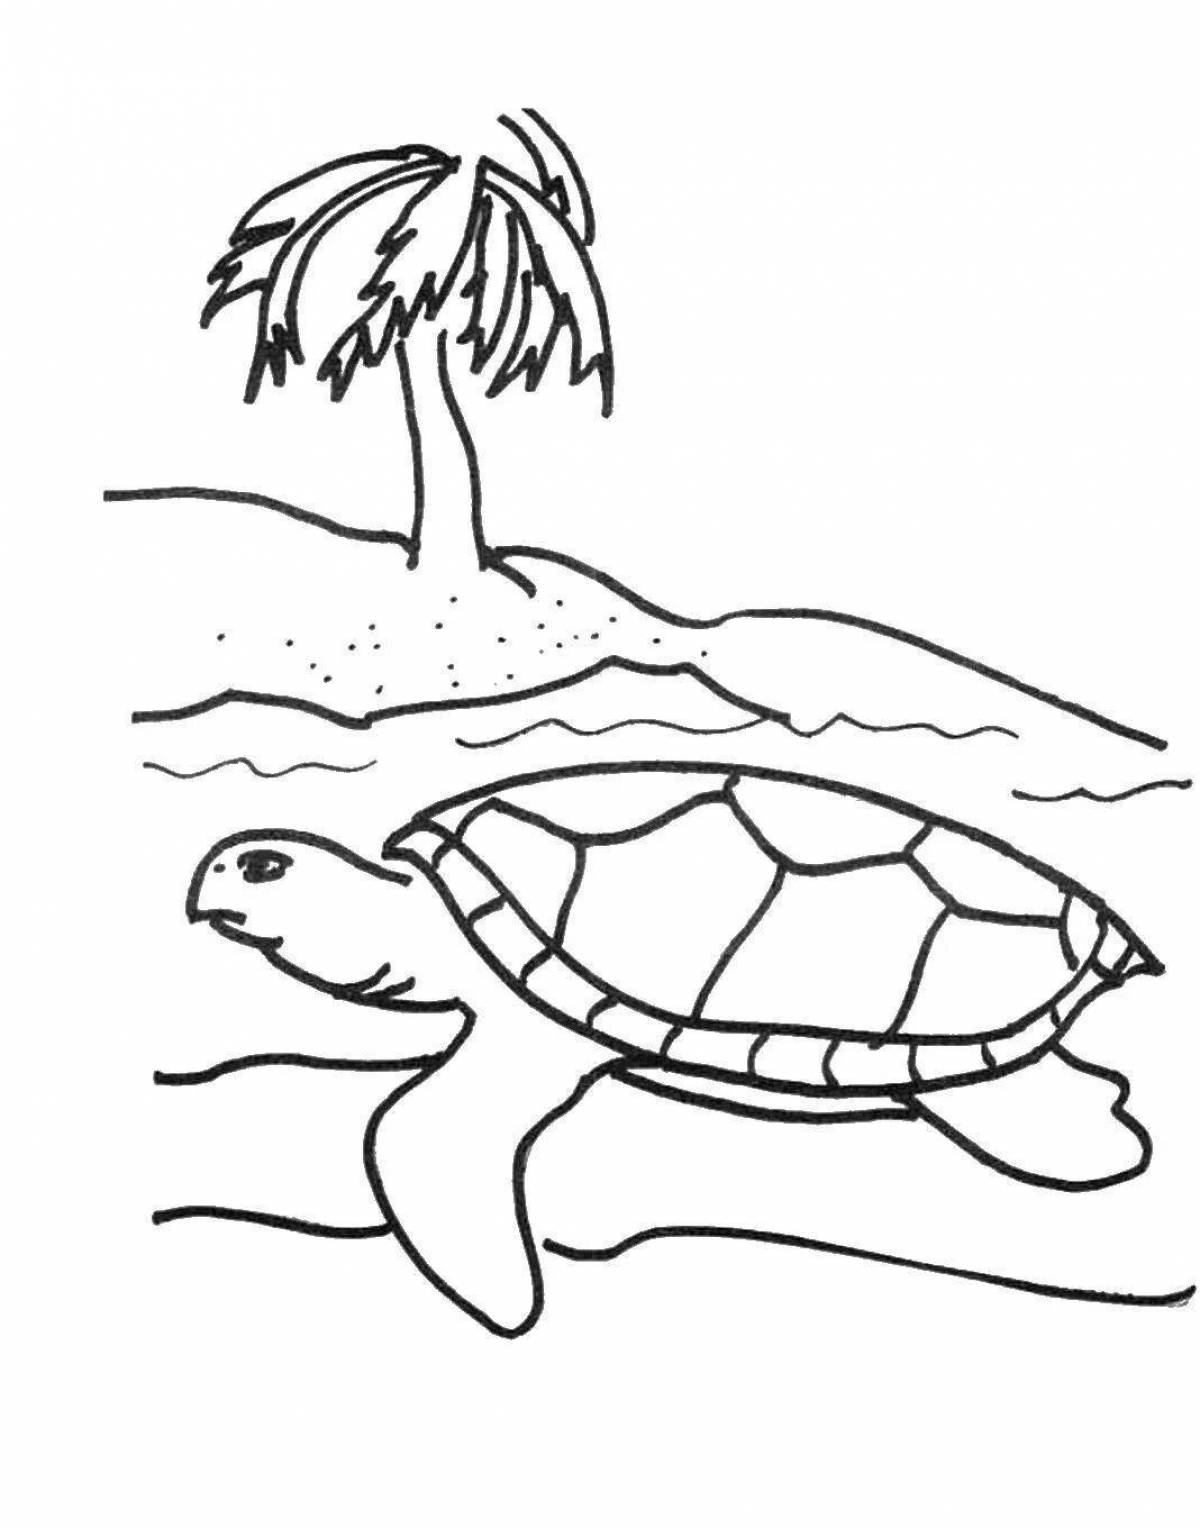 Увлекательная раскраска морской черепахи для детей